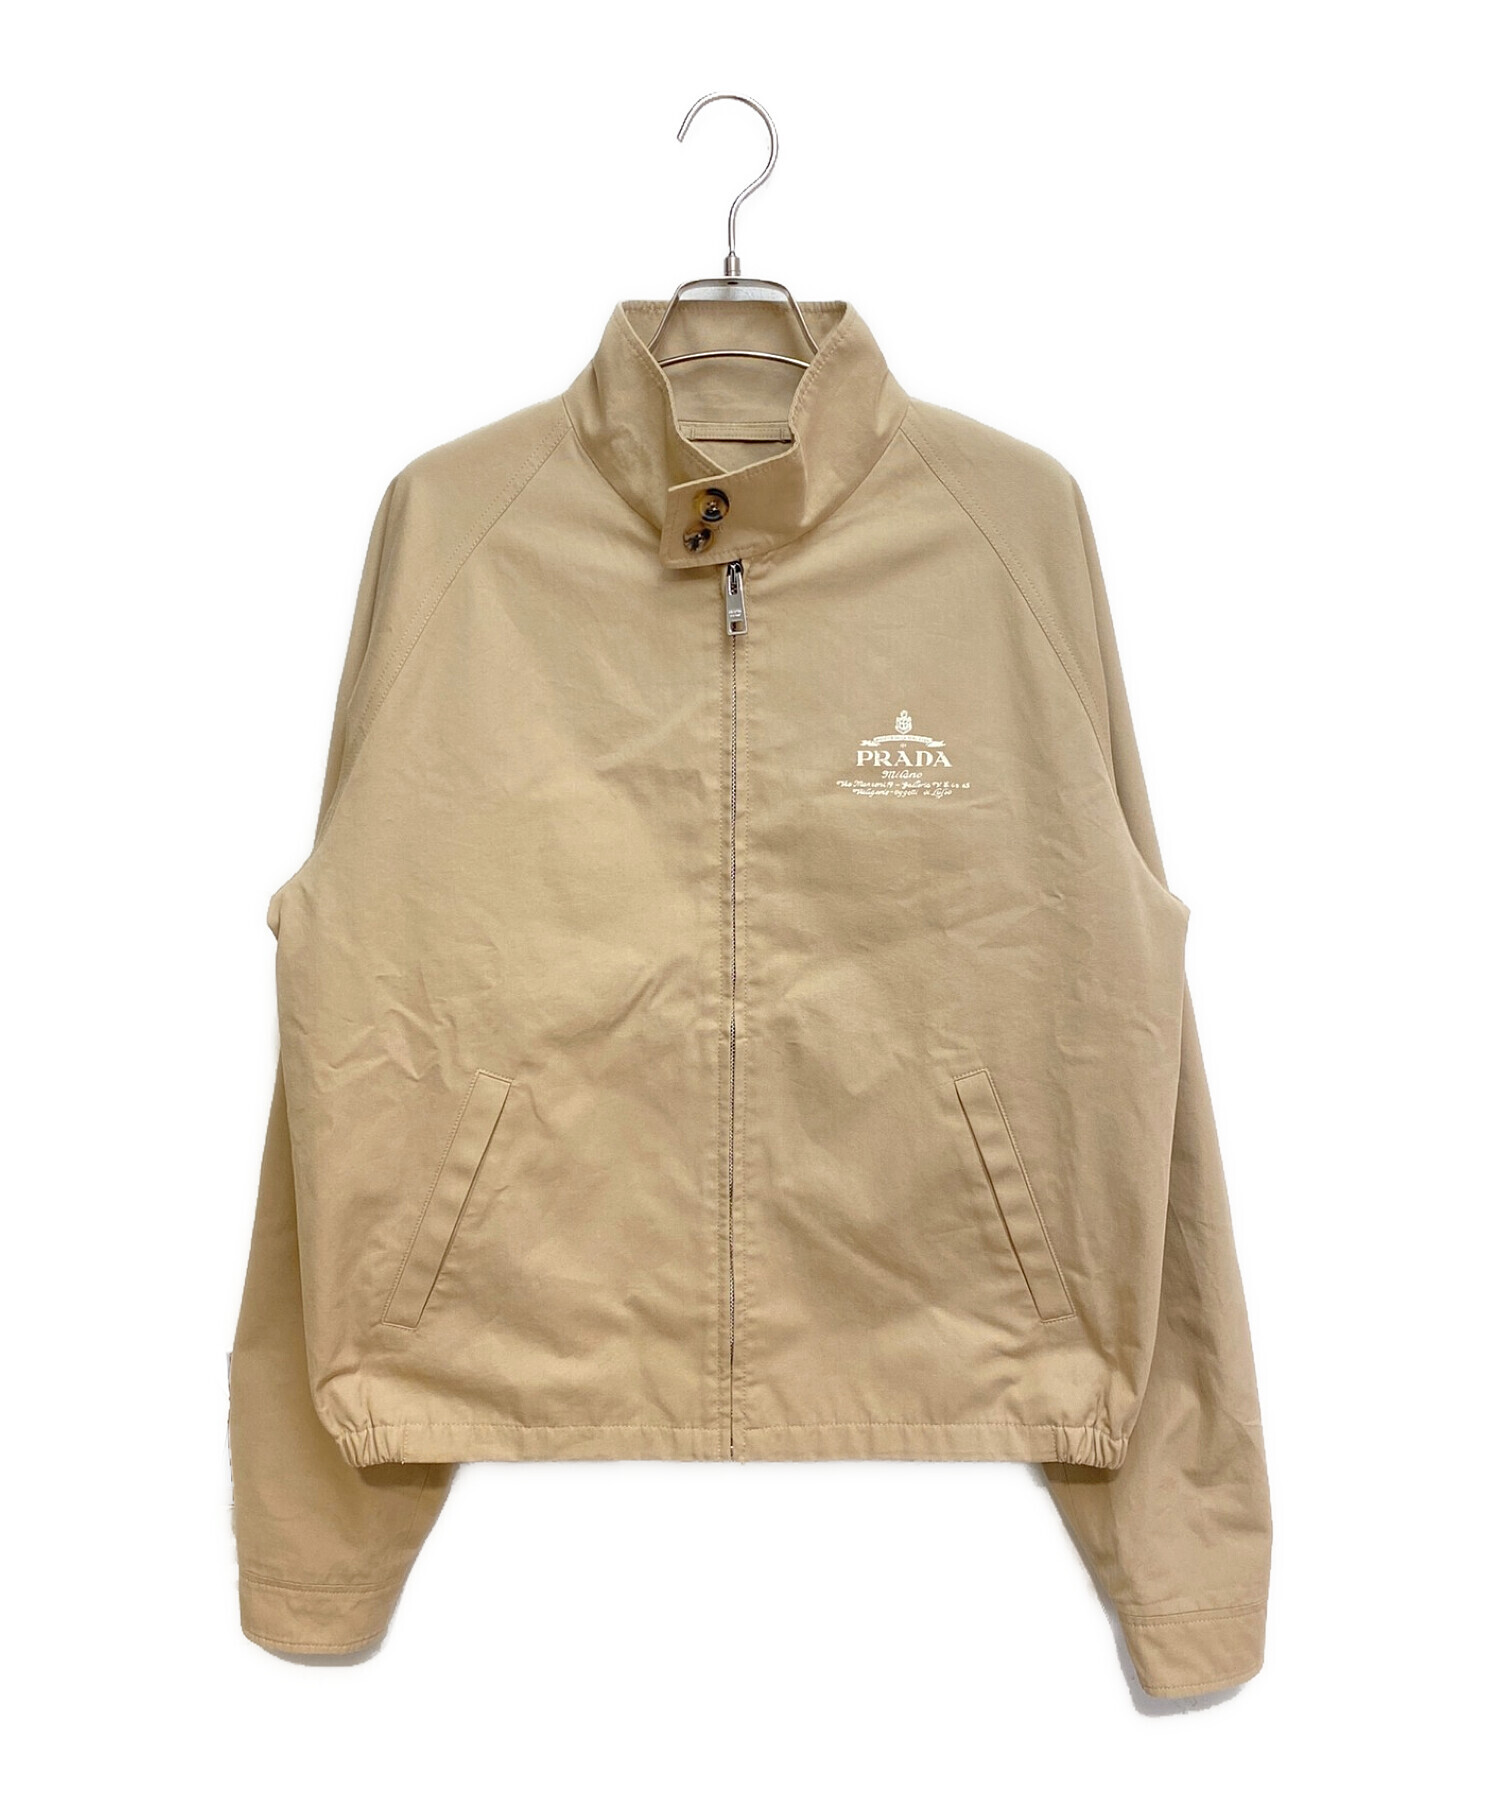 PRADA (プラダ) Cotton blend jacket(コットンブレンドジャケット) ベージュ サイズ:50